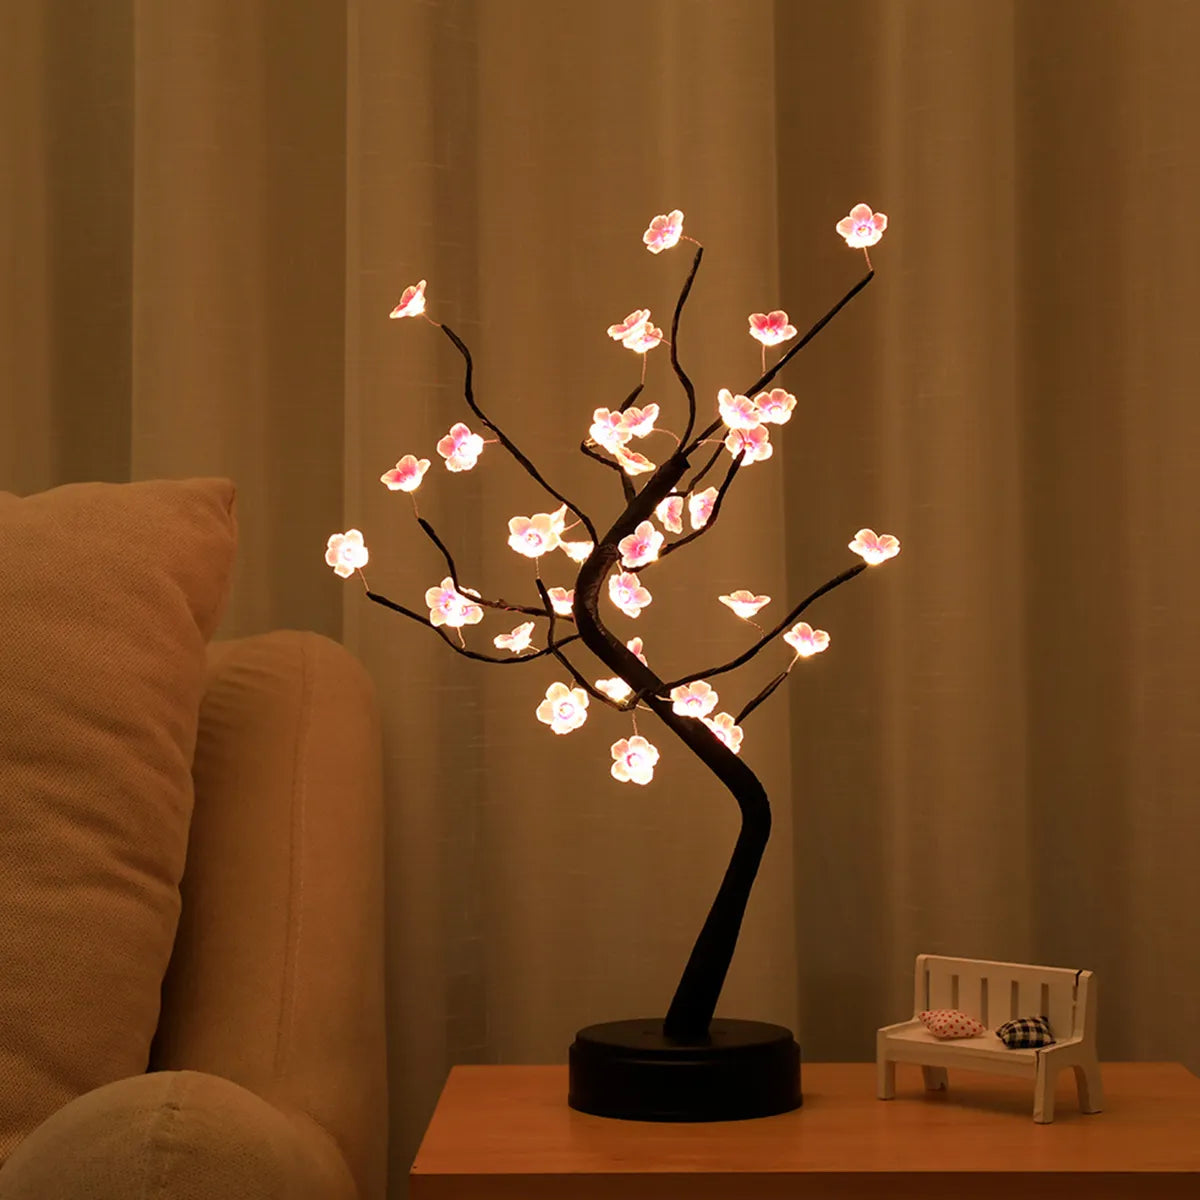 Plein ciel étoile feuille d'or saule cerisier LED veilleuse Mini arbre de noël fil de cuivre guirlande lampe fée lumière pour la maison